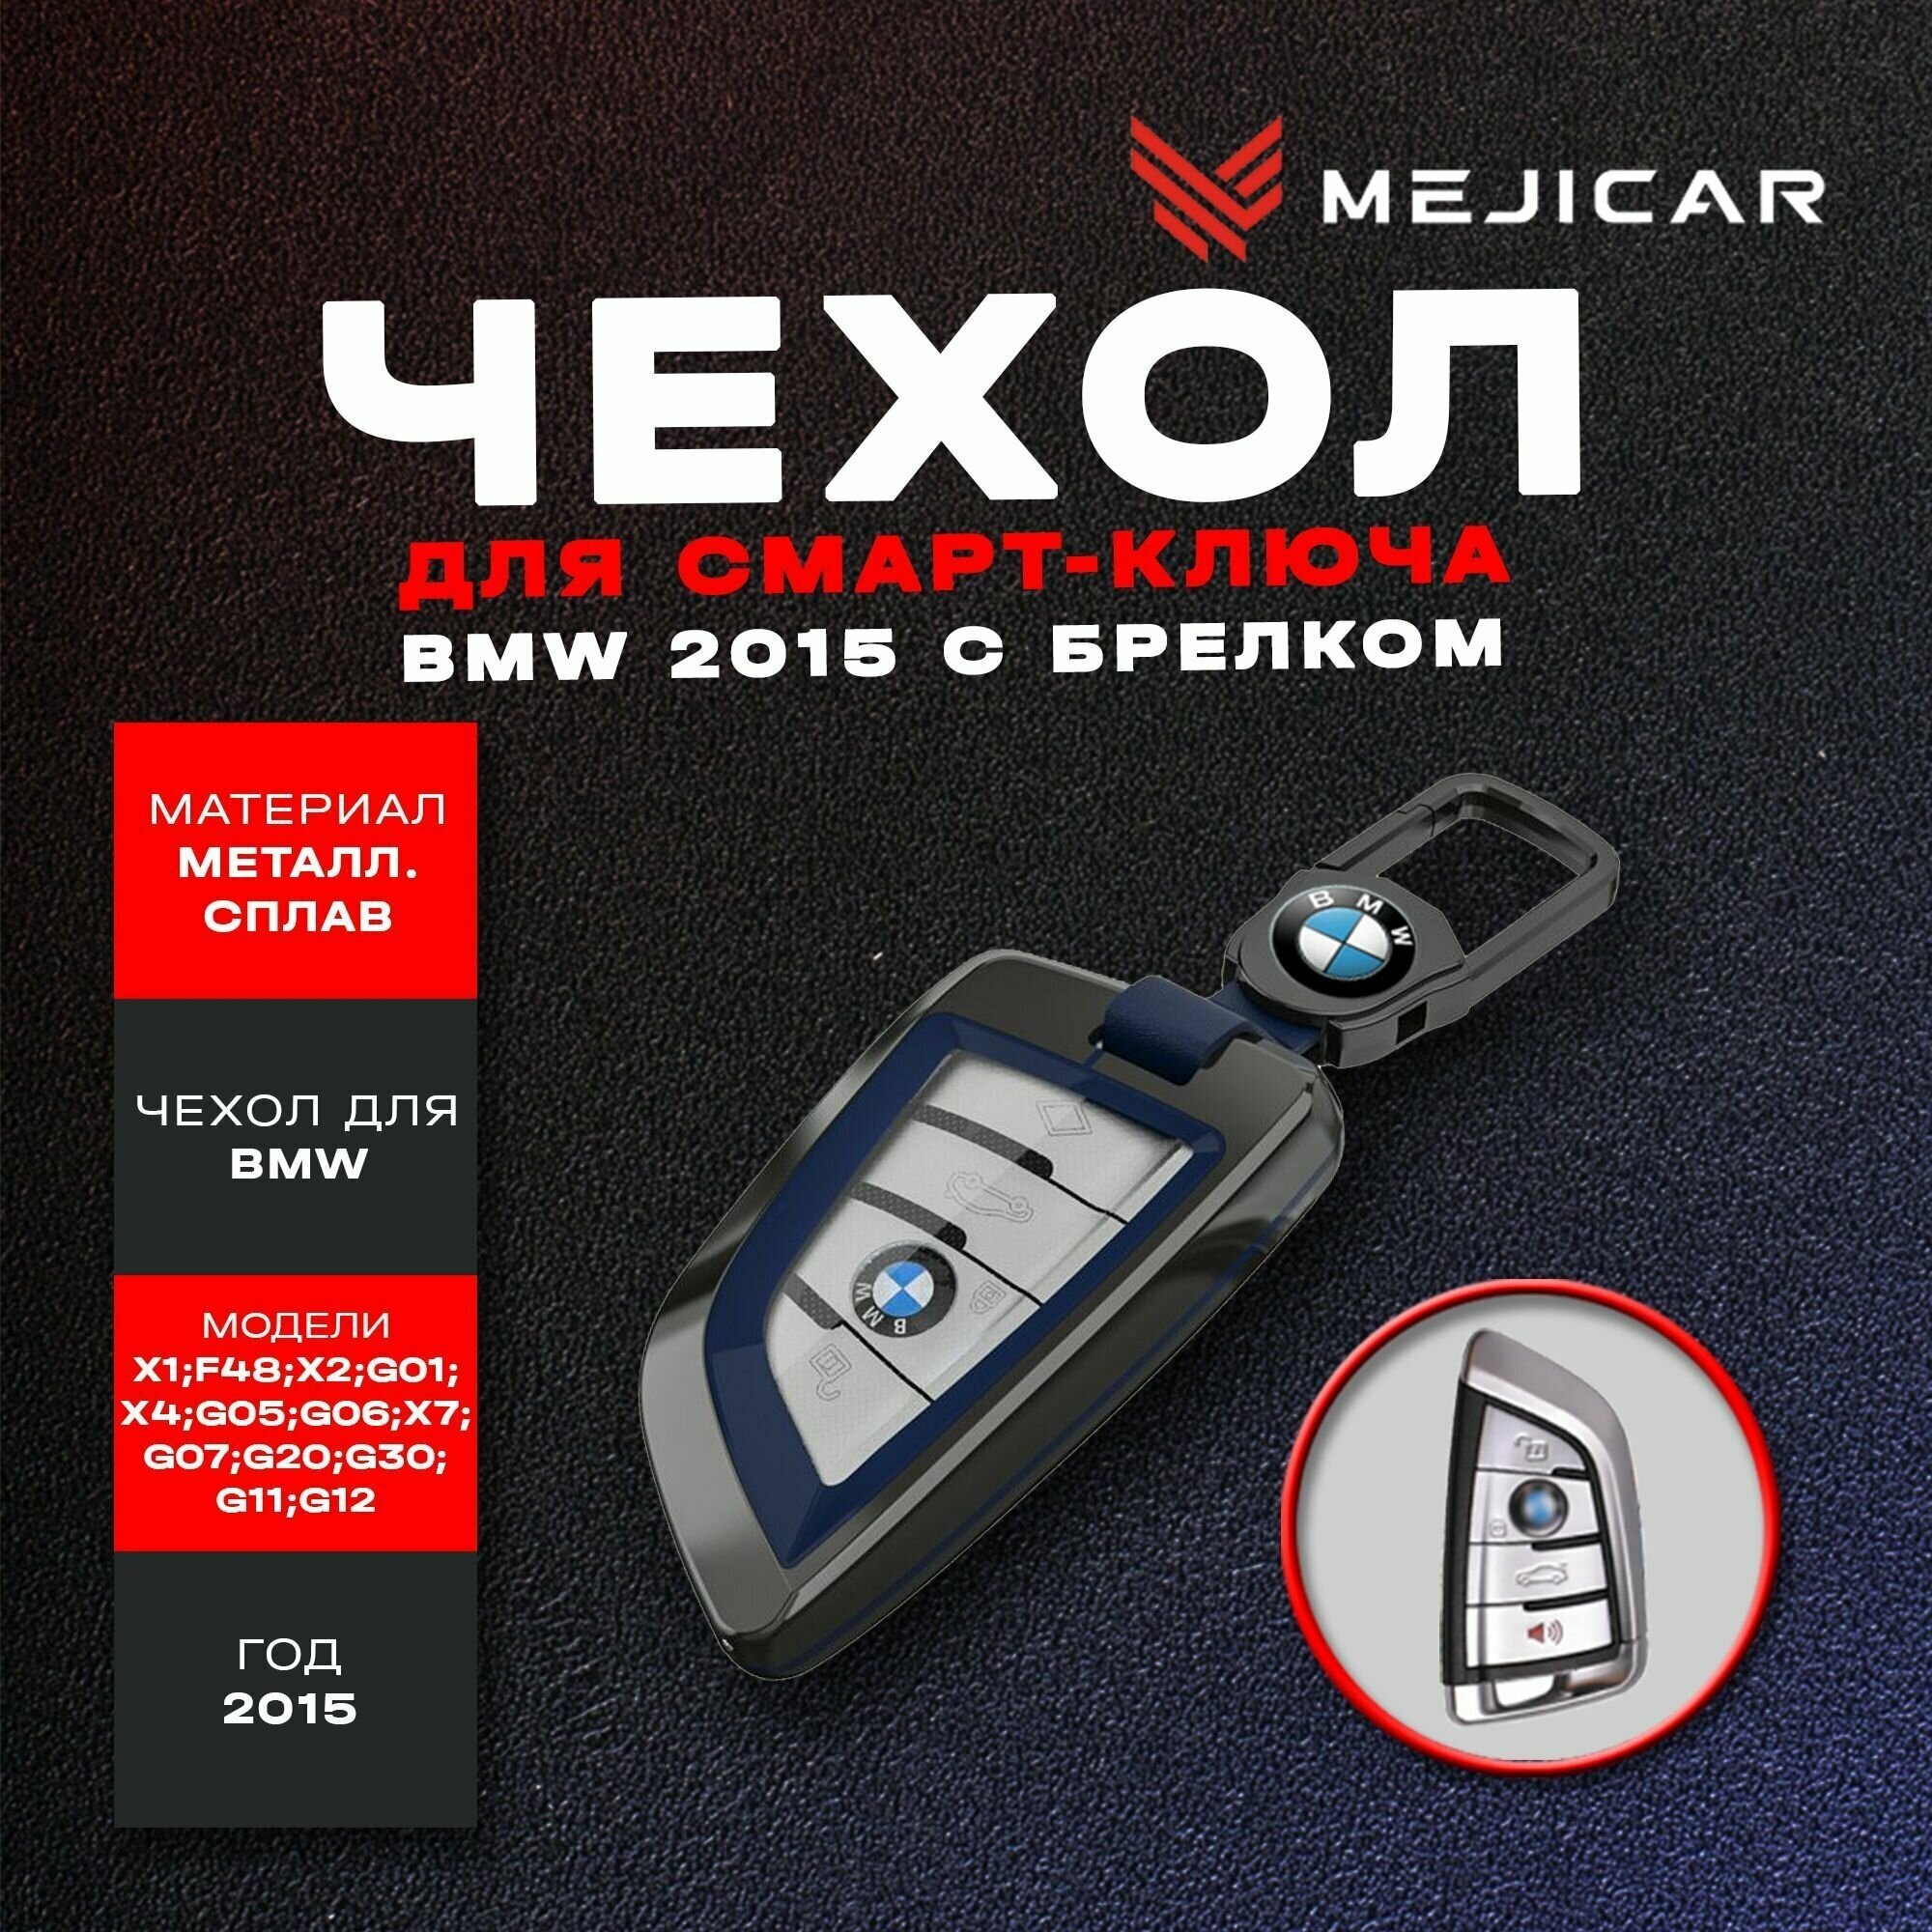 Чехол из металлического сплава MejiCar для ключа BMW 2015 - н. в. с брелком